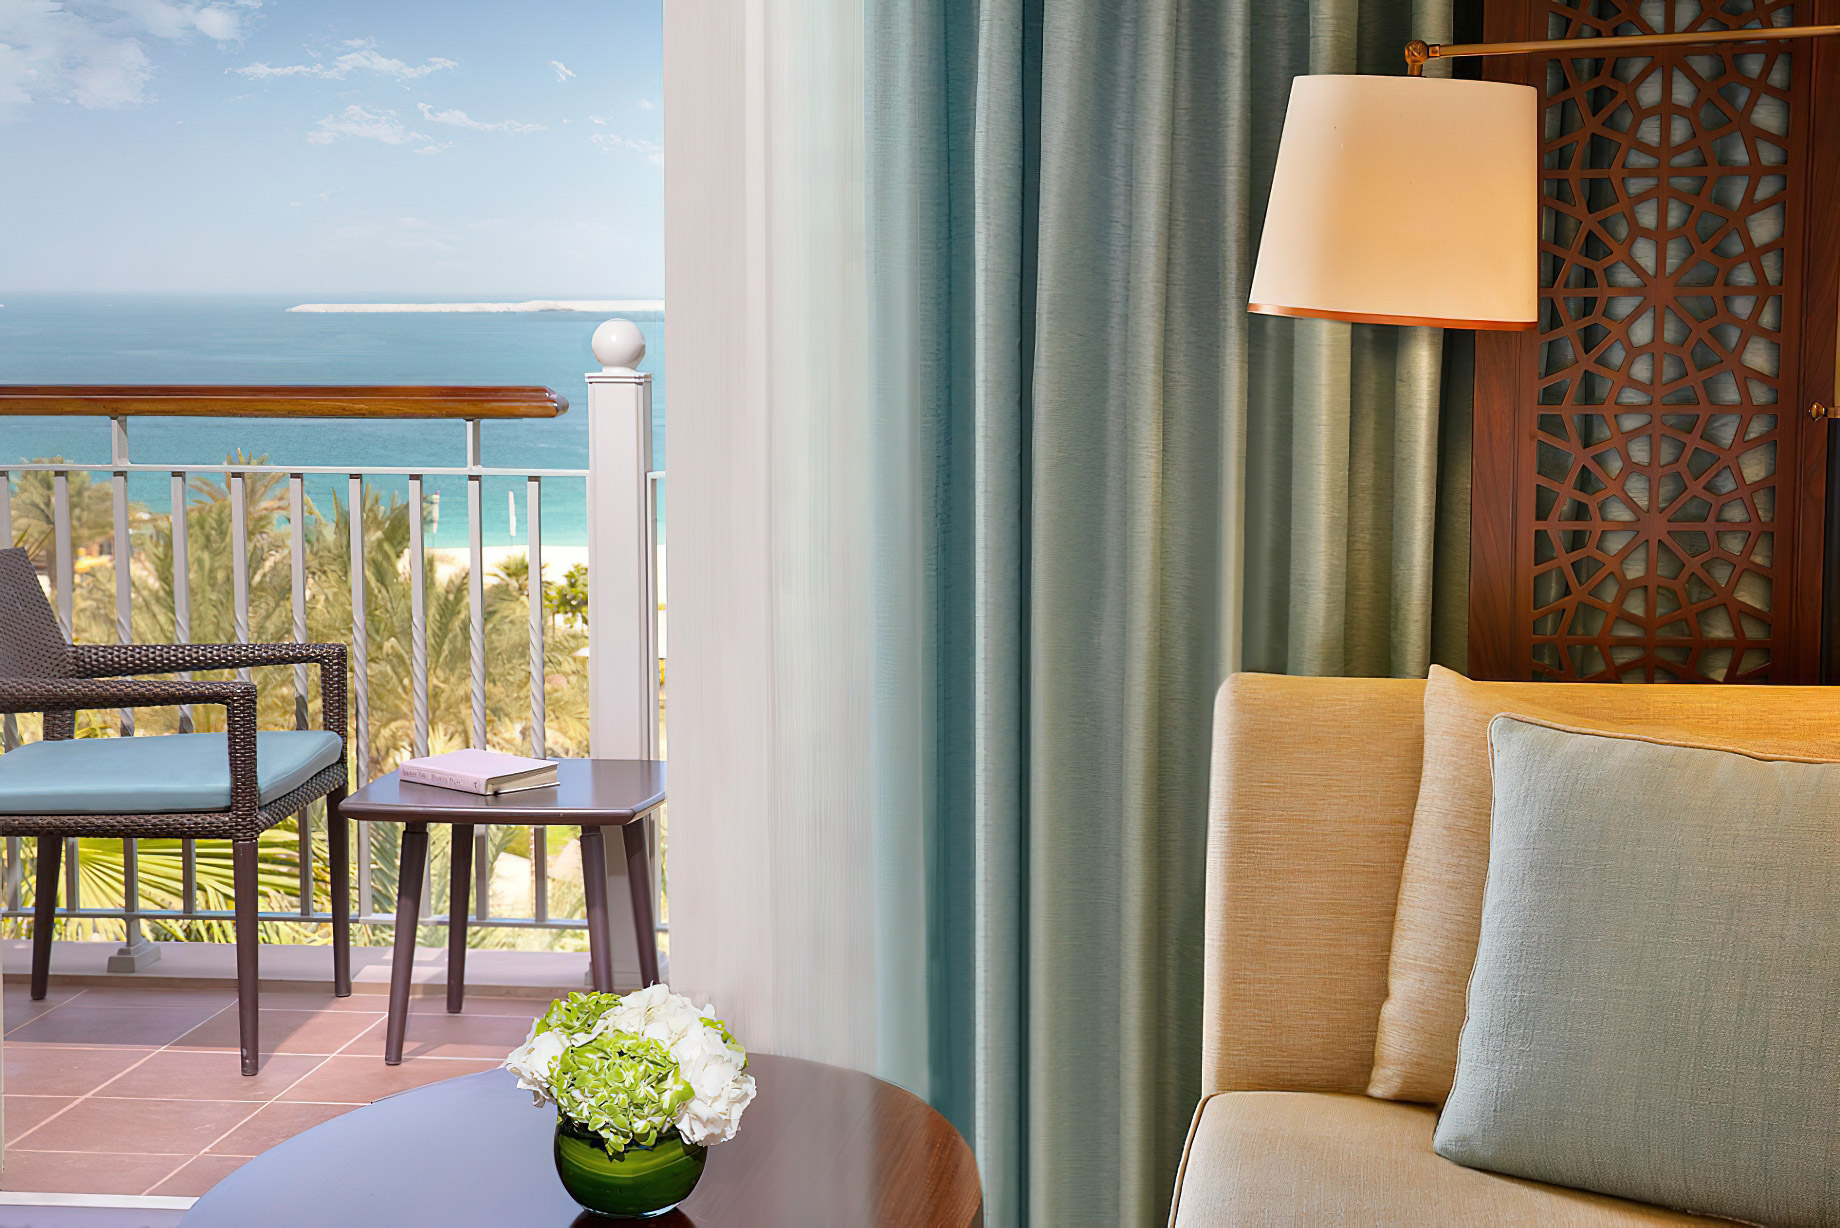 The Ritz-Carlton, Dubai Hotel – JBR Beach, Dubai, UAE – Club Ocean View Room Balcony View